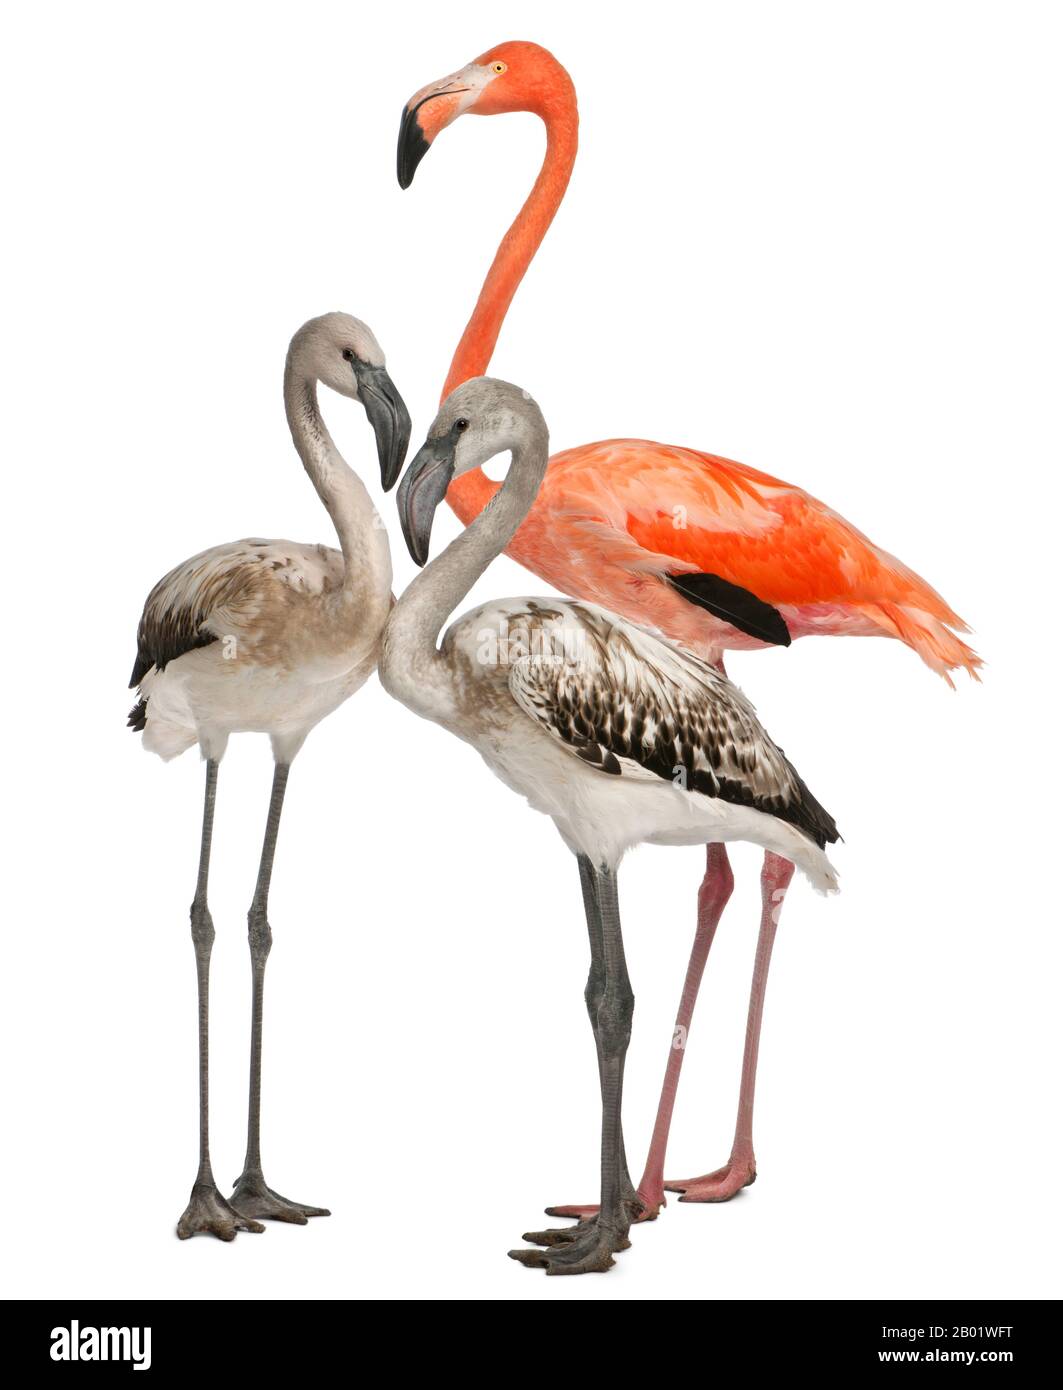 Flamingo maggiore, Fenicopterus roseus, 8 mesi, e Flamingo americano, Fenicopterus ruber, 10 anni, di fronte a sfondo bianco Foto Stock